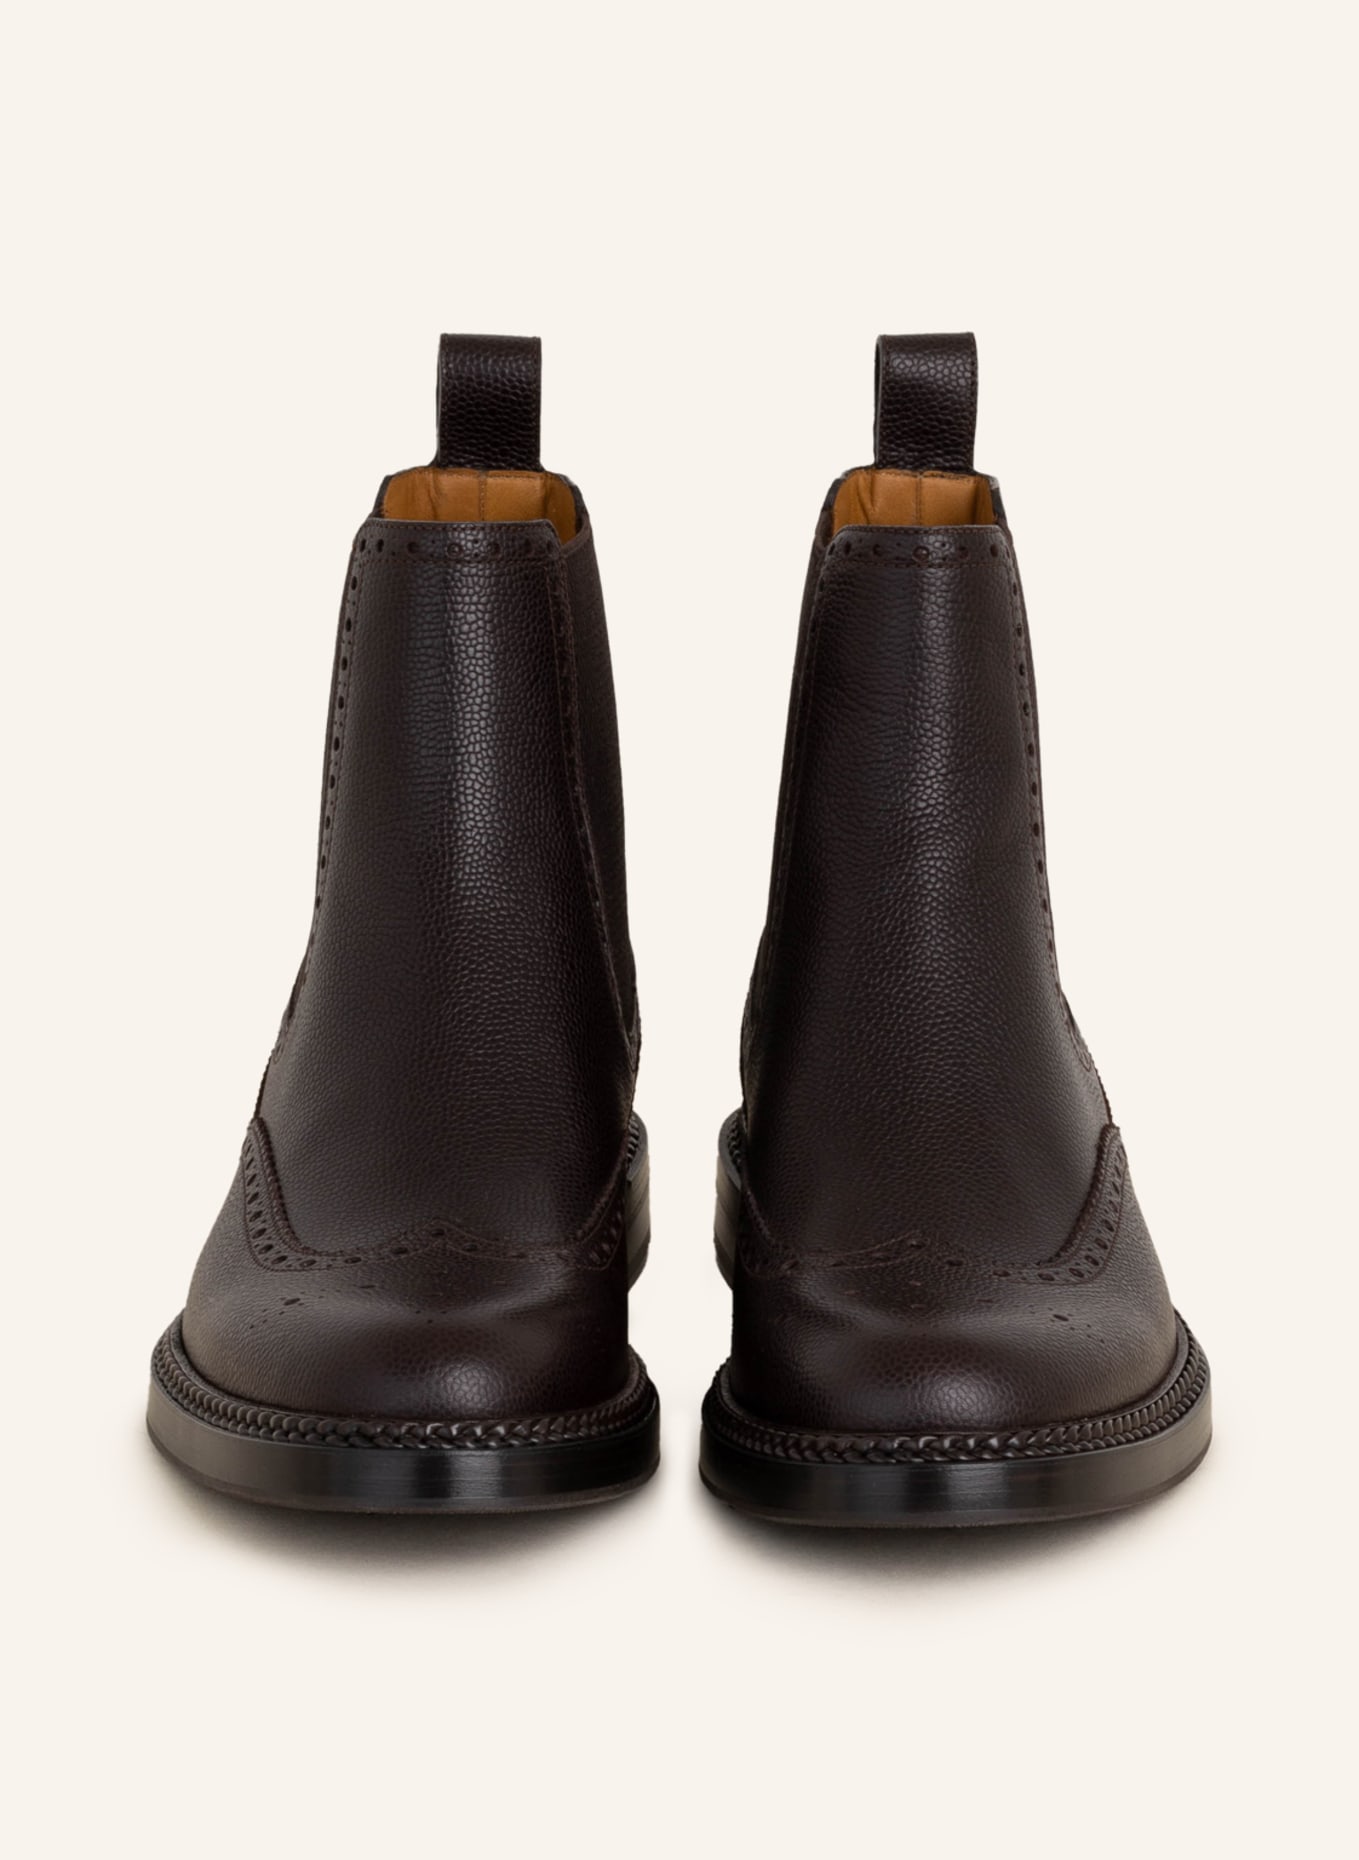 GUCCI Chelsea-Boots HENRY, Farbe: 2140 COCOA/COCOA (Bild 3)